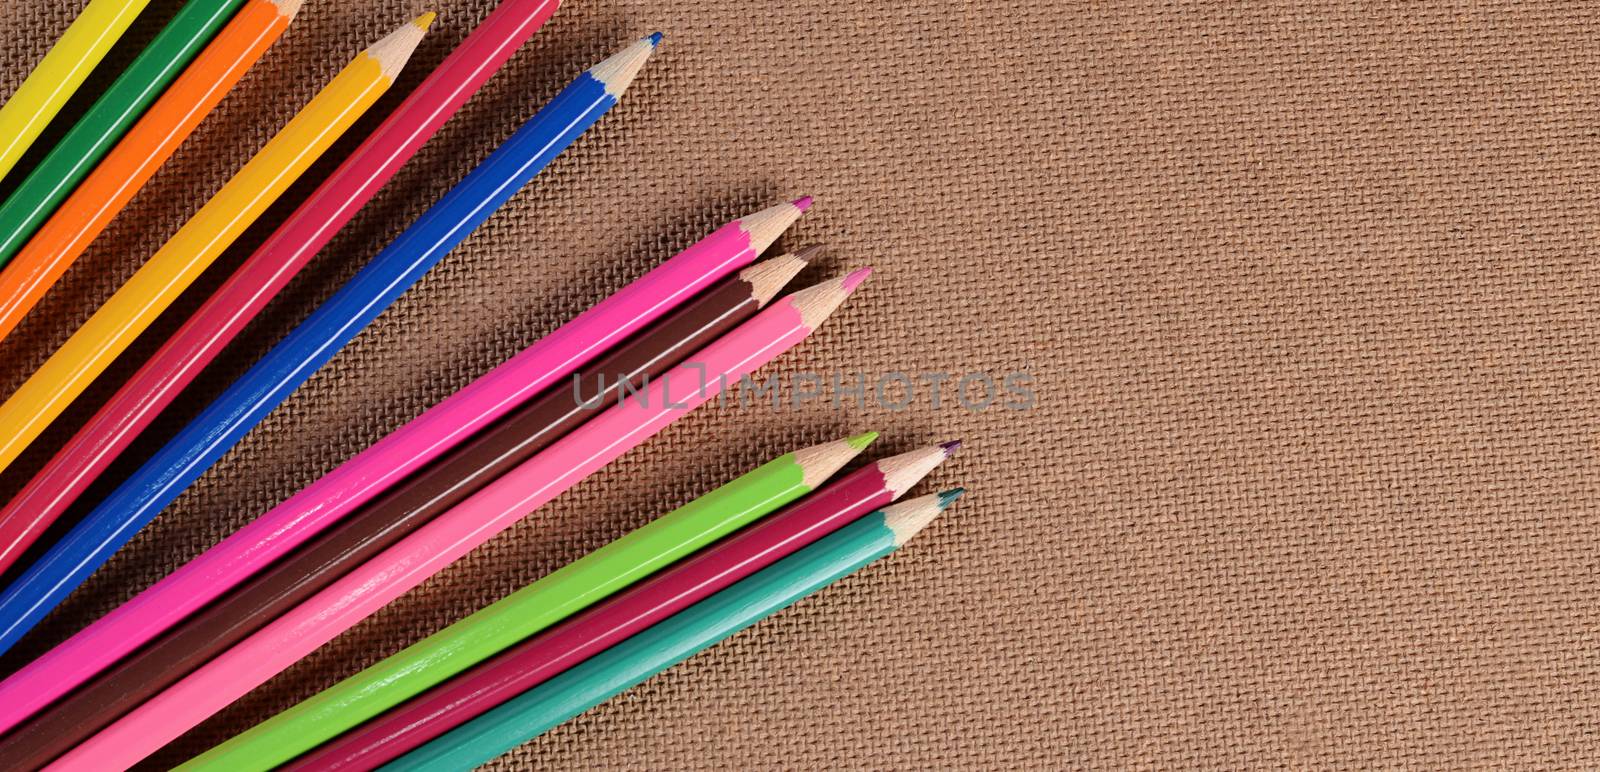 Color pencils on a board. School concept